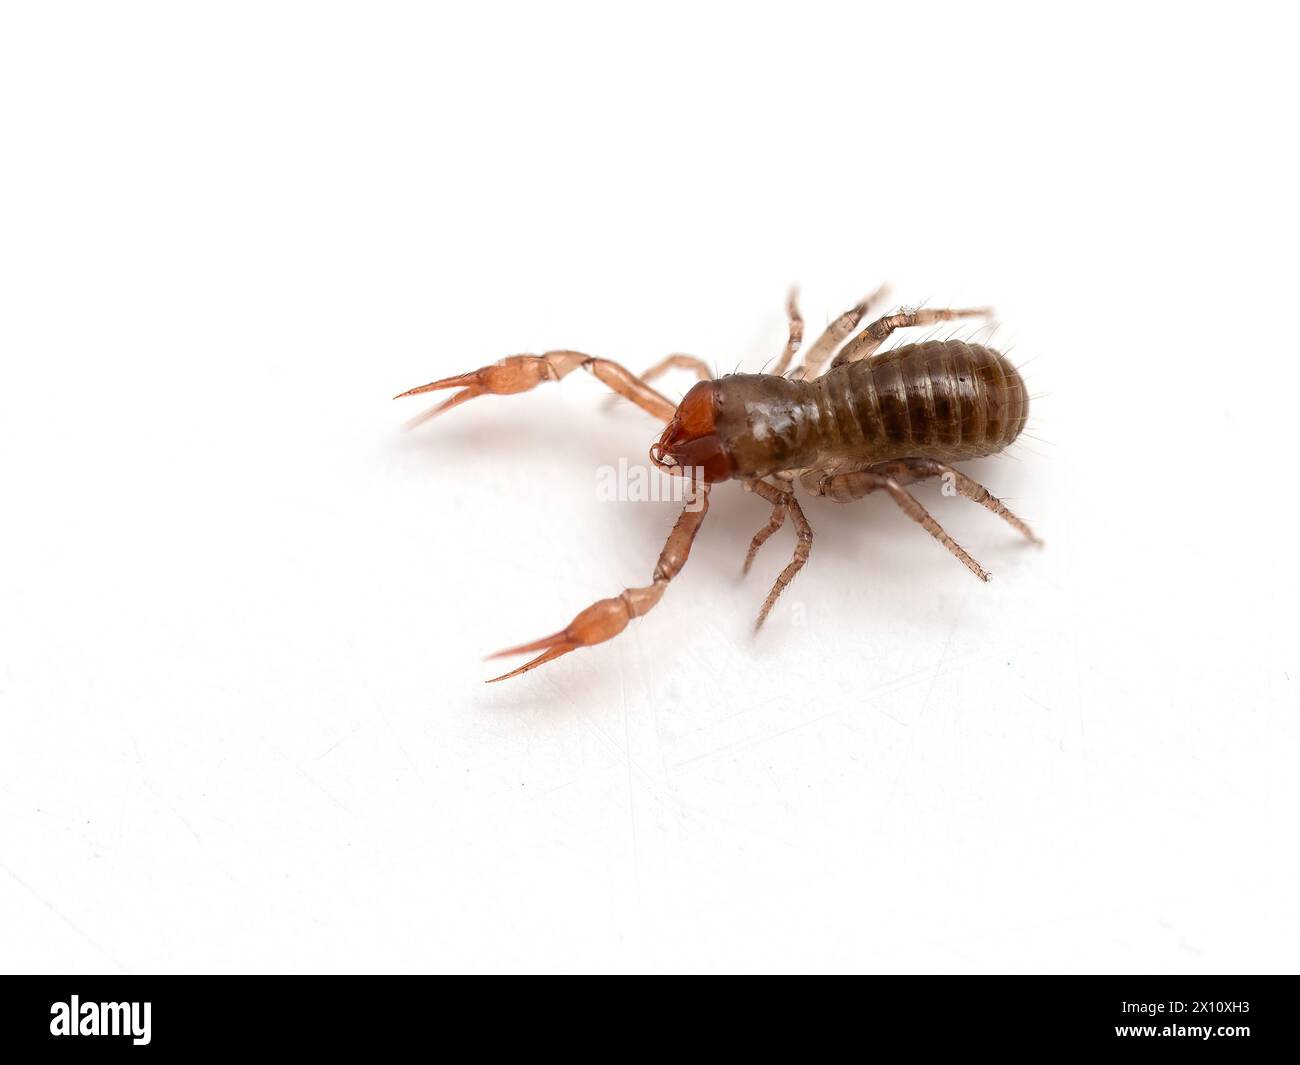 Un très petit pseudoscorpion (Apochthonius minimus) marchant sur une table blanche Banque D'Images